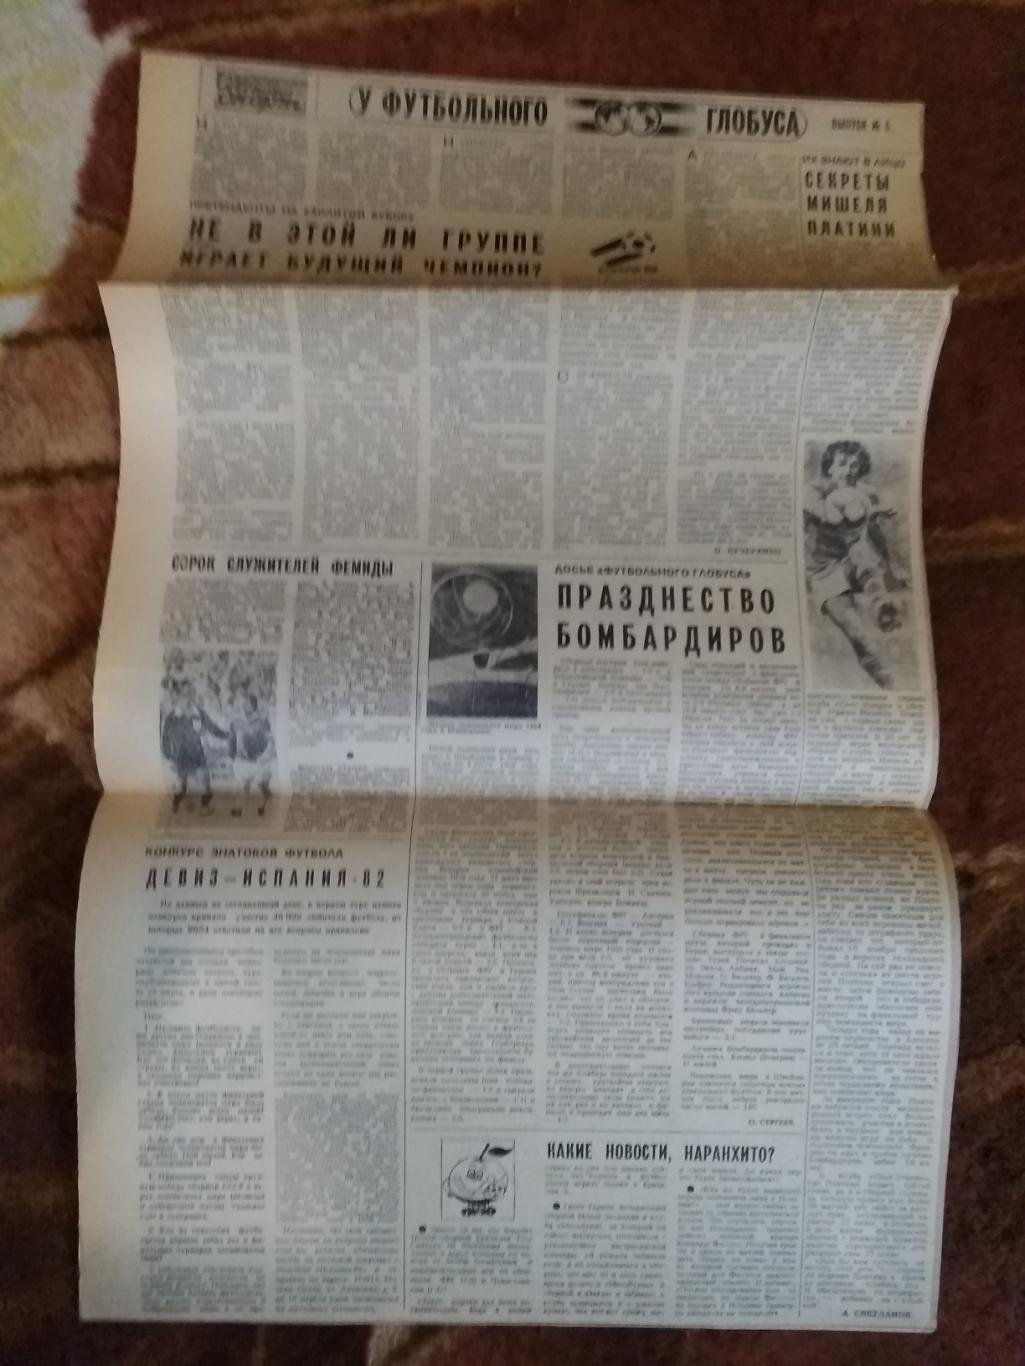 У футбольного глобуса № 5 30.03.1982 г. Советский спорт. (ЧМ 1982).